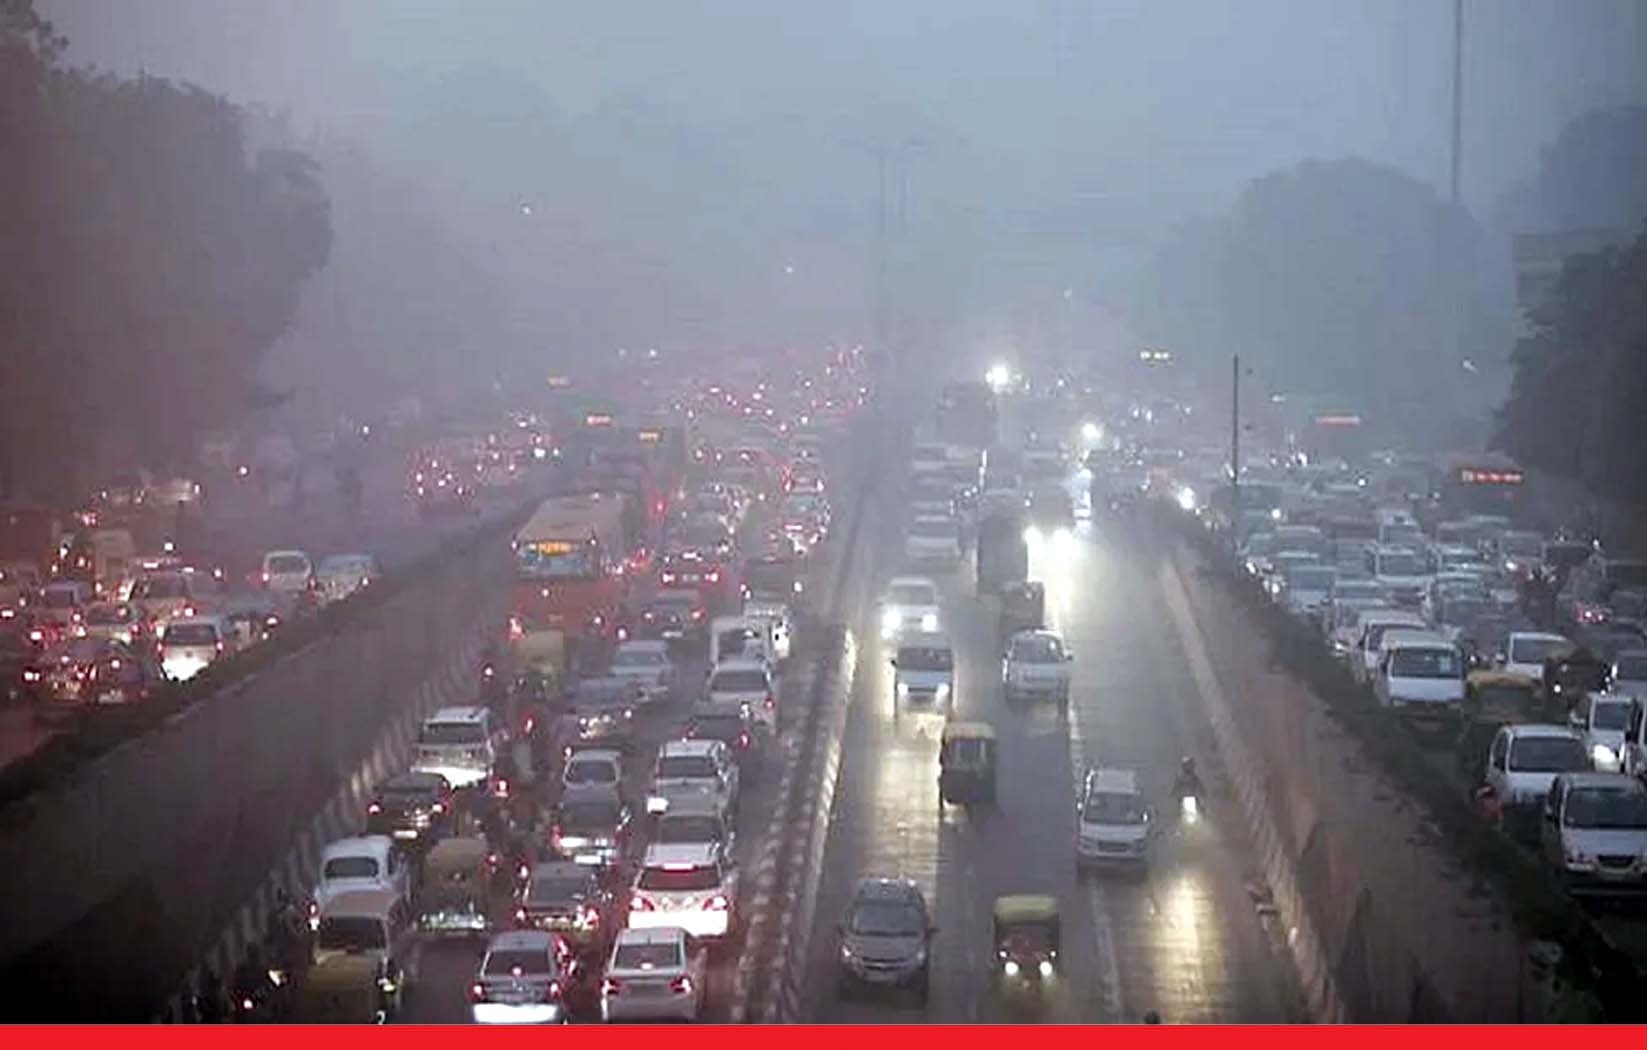 बारिश के बाद भी AQI 380 के साथ बहुत खराब श्रेणी में दिल्ली की हवा